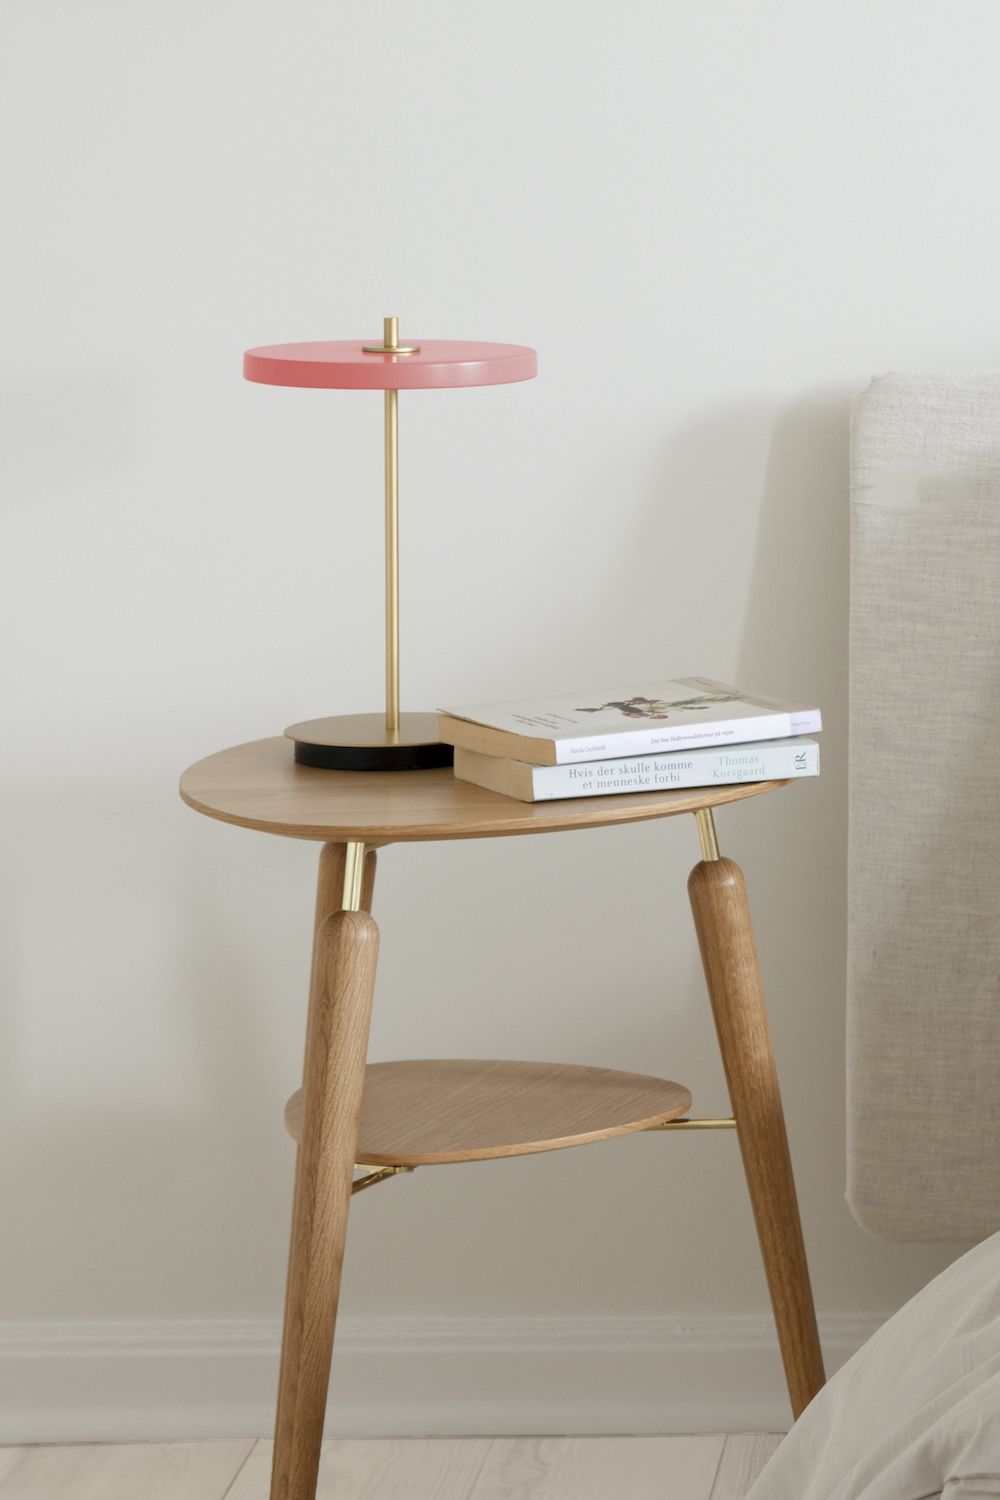 Lampa stołowa z różowym kloszem przy łóżku